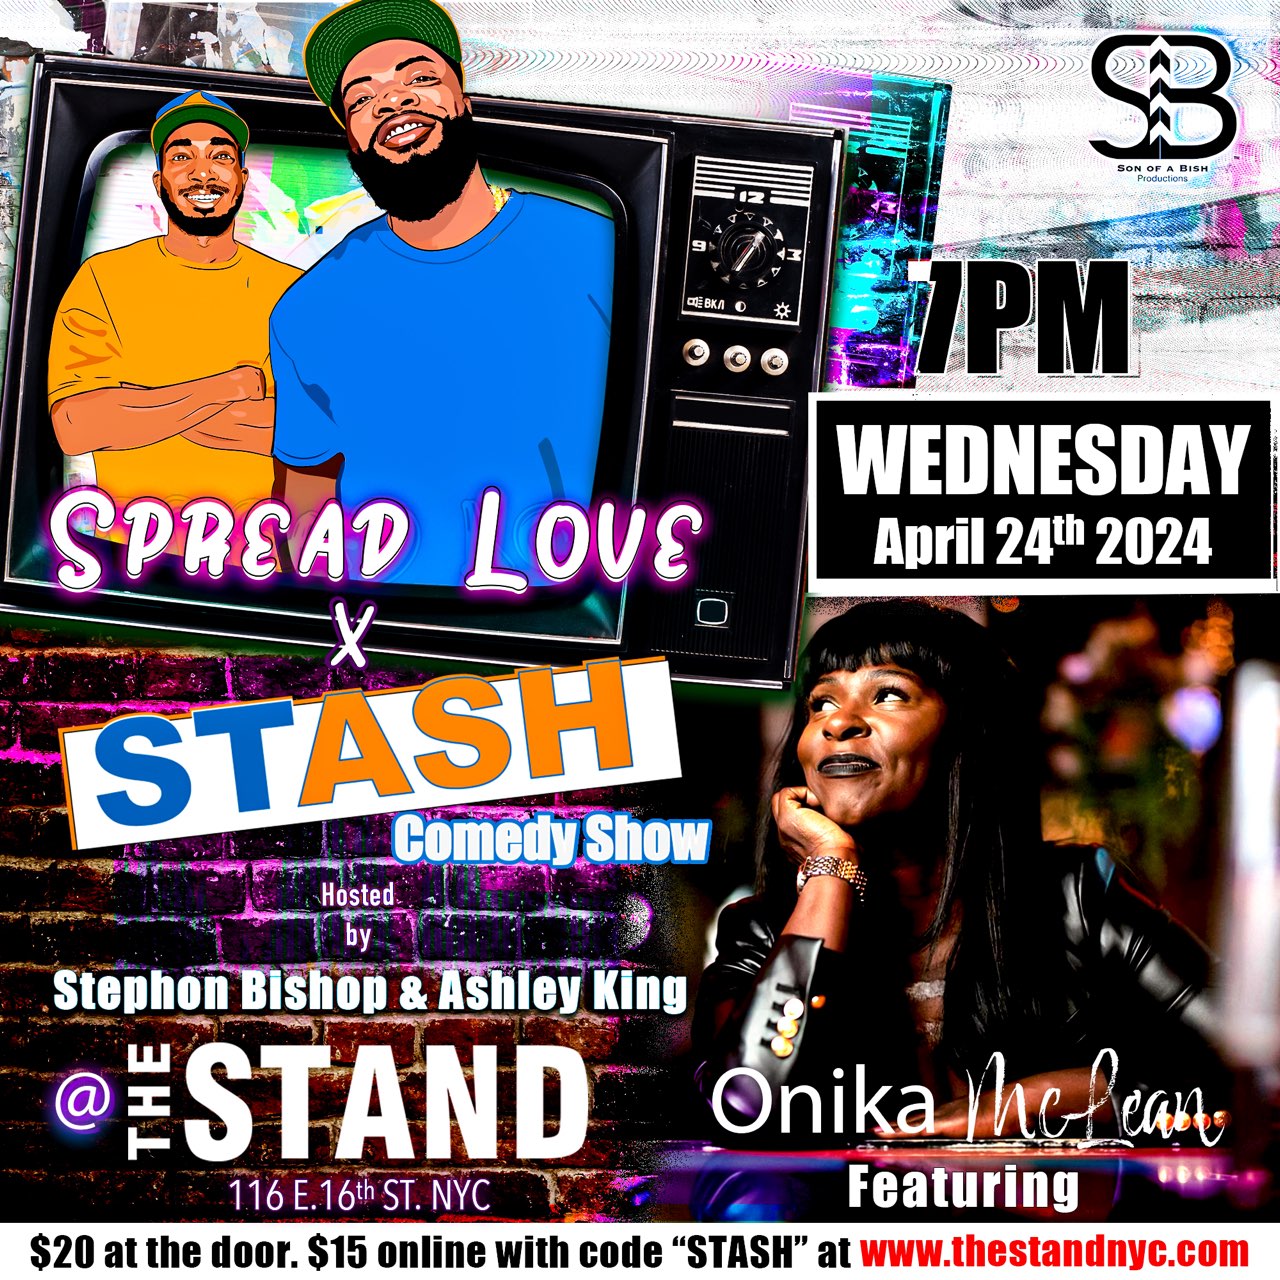 The Stash Comedy Show: Spread Love Edition